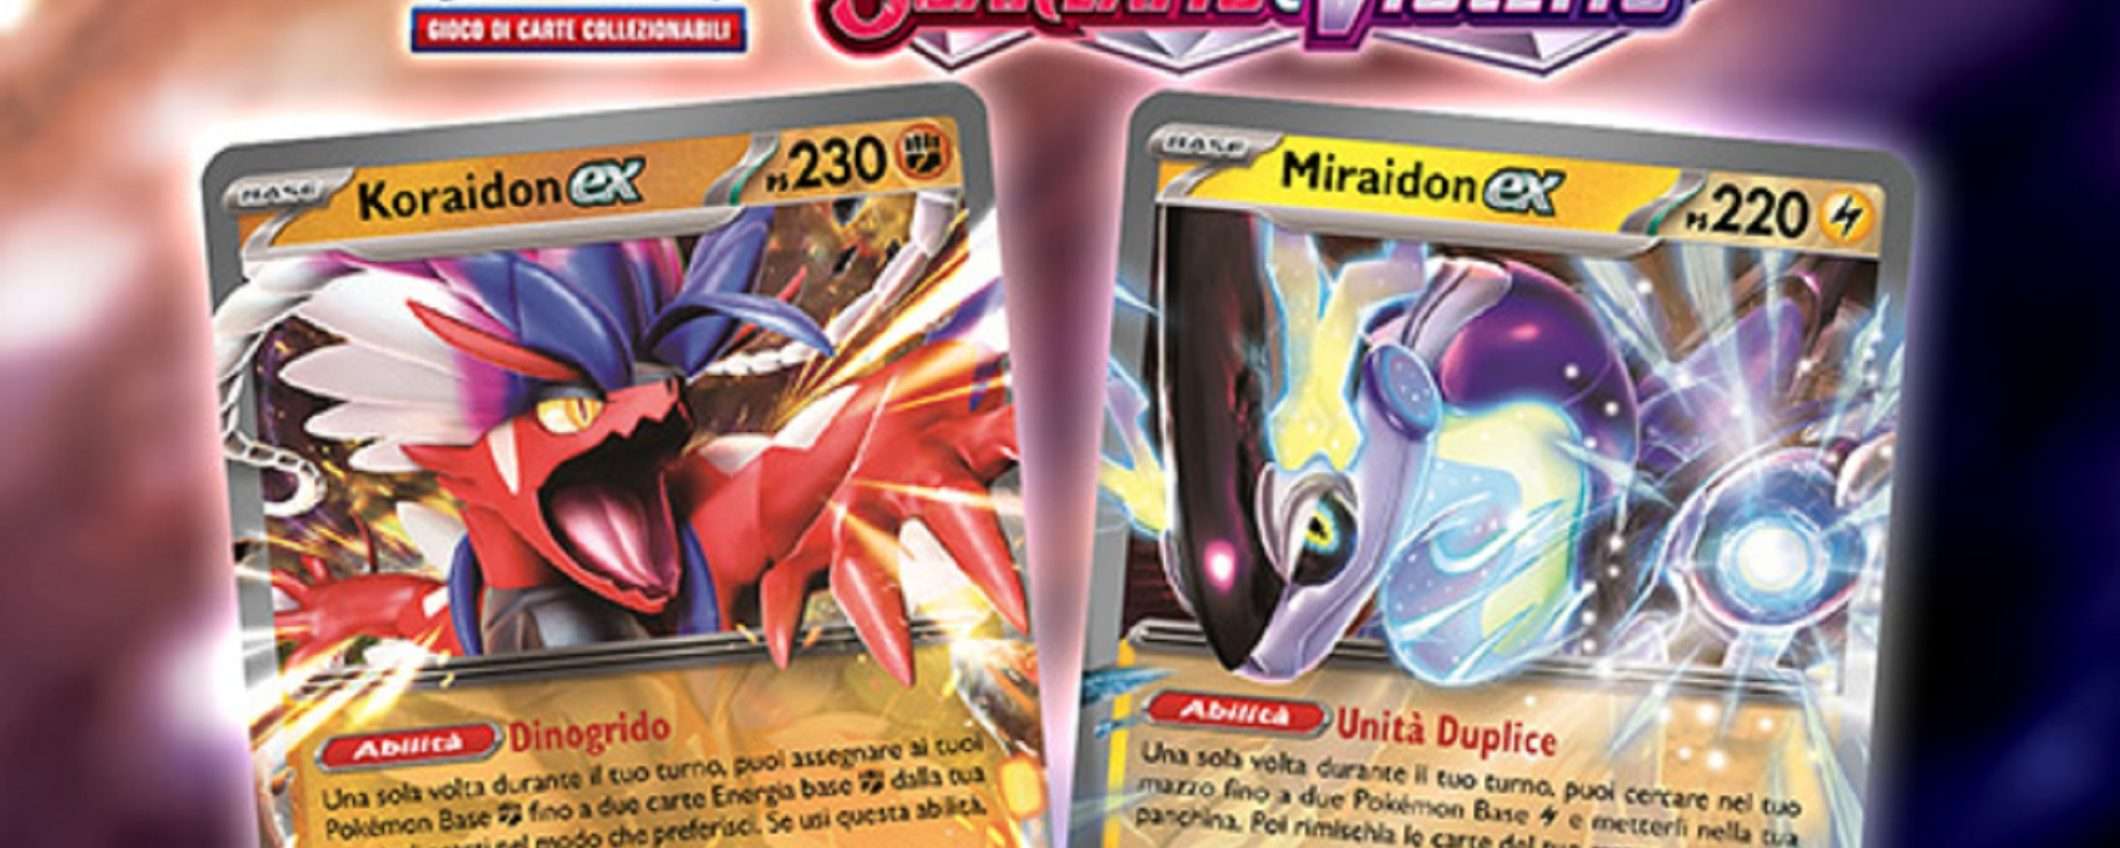 Pokémon Violetto e Scarlatto: sia con Koraidon che con Miraidon il prezzo è WOW su eBay